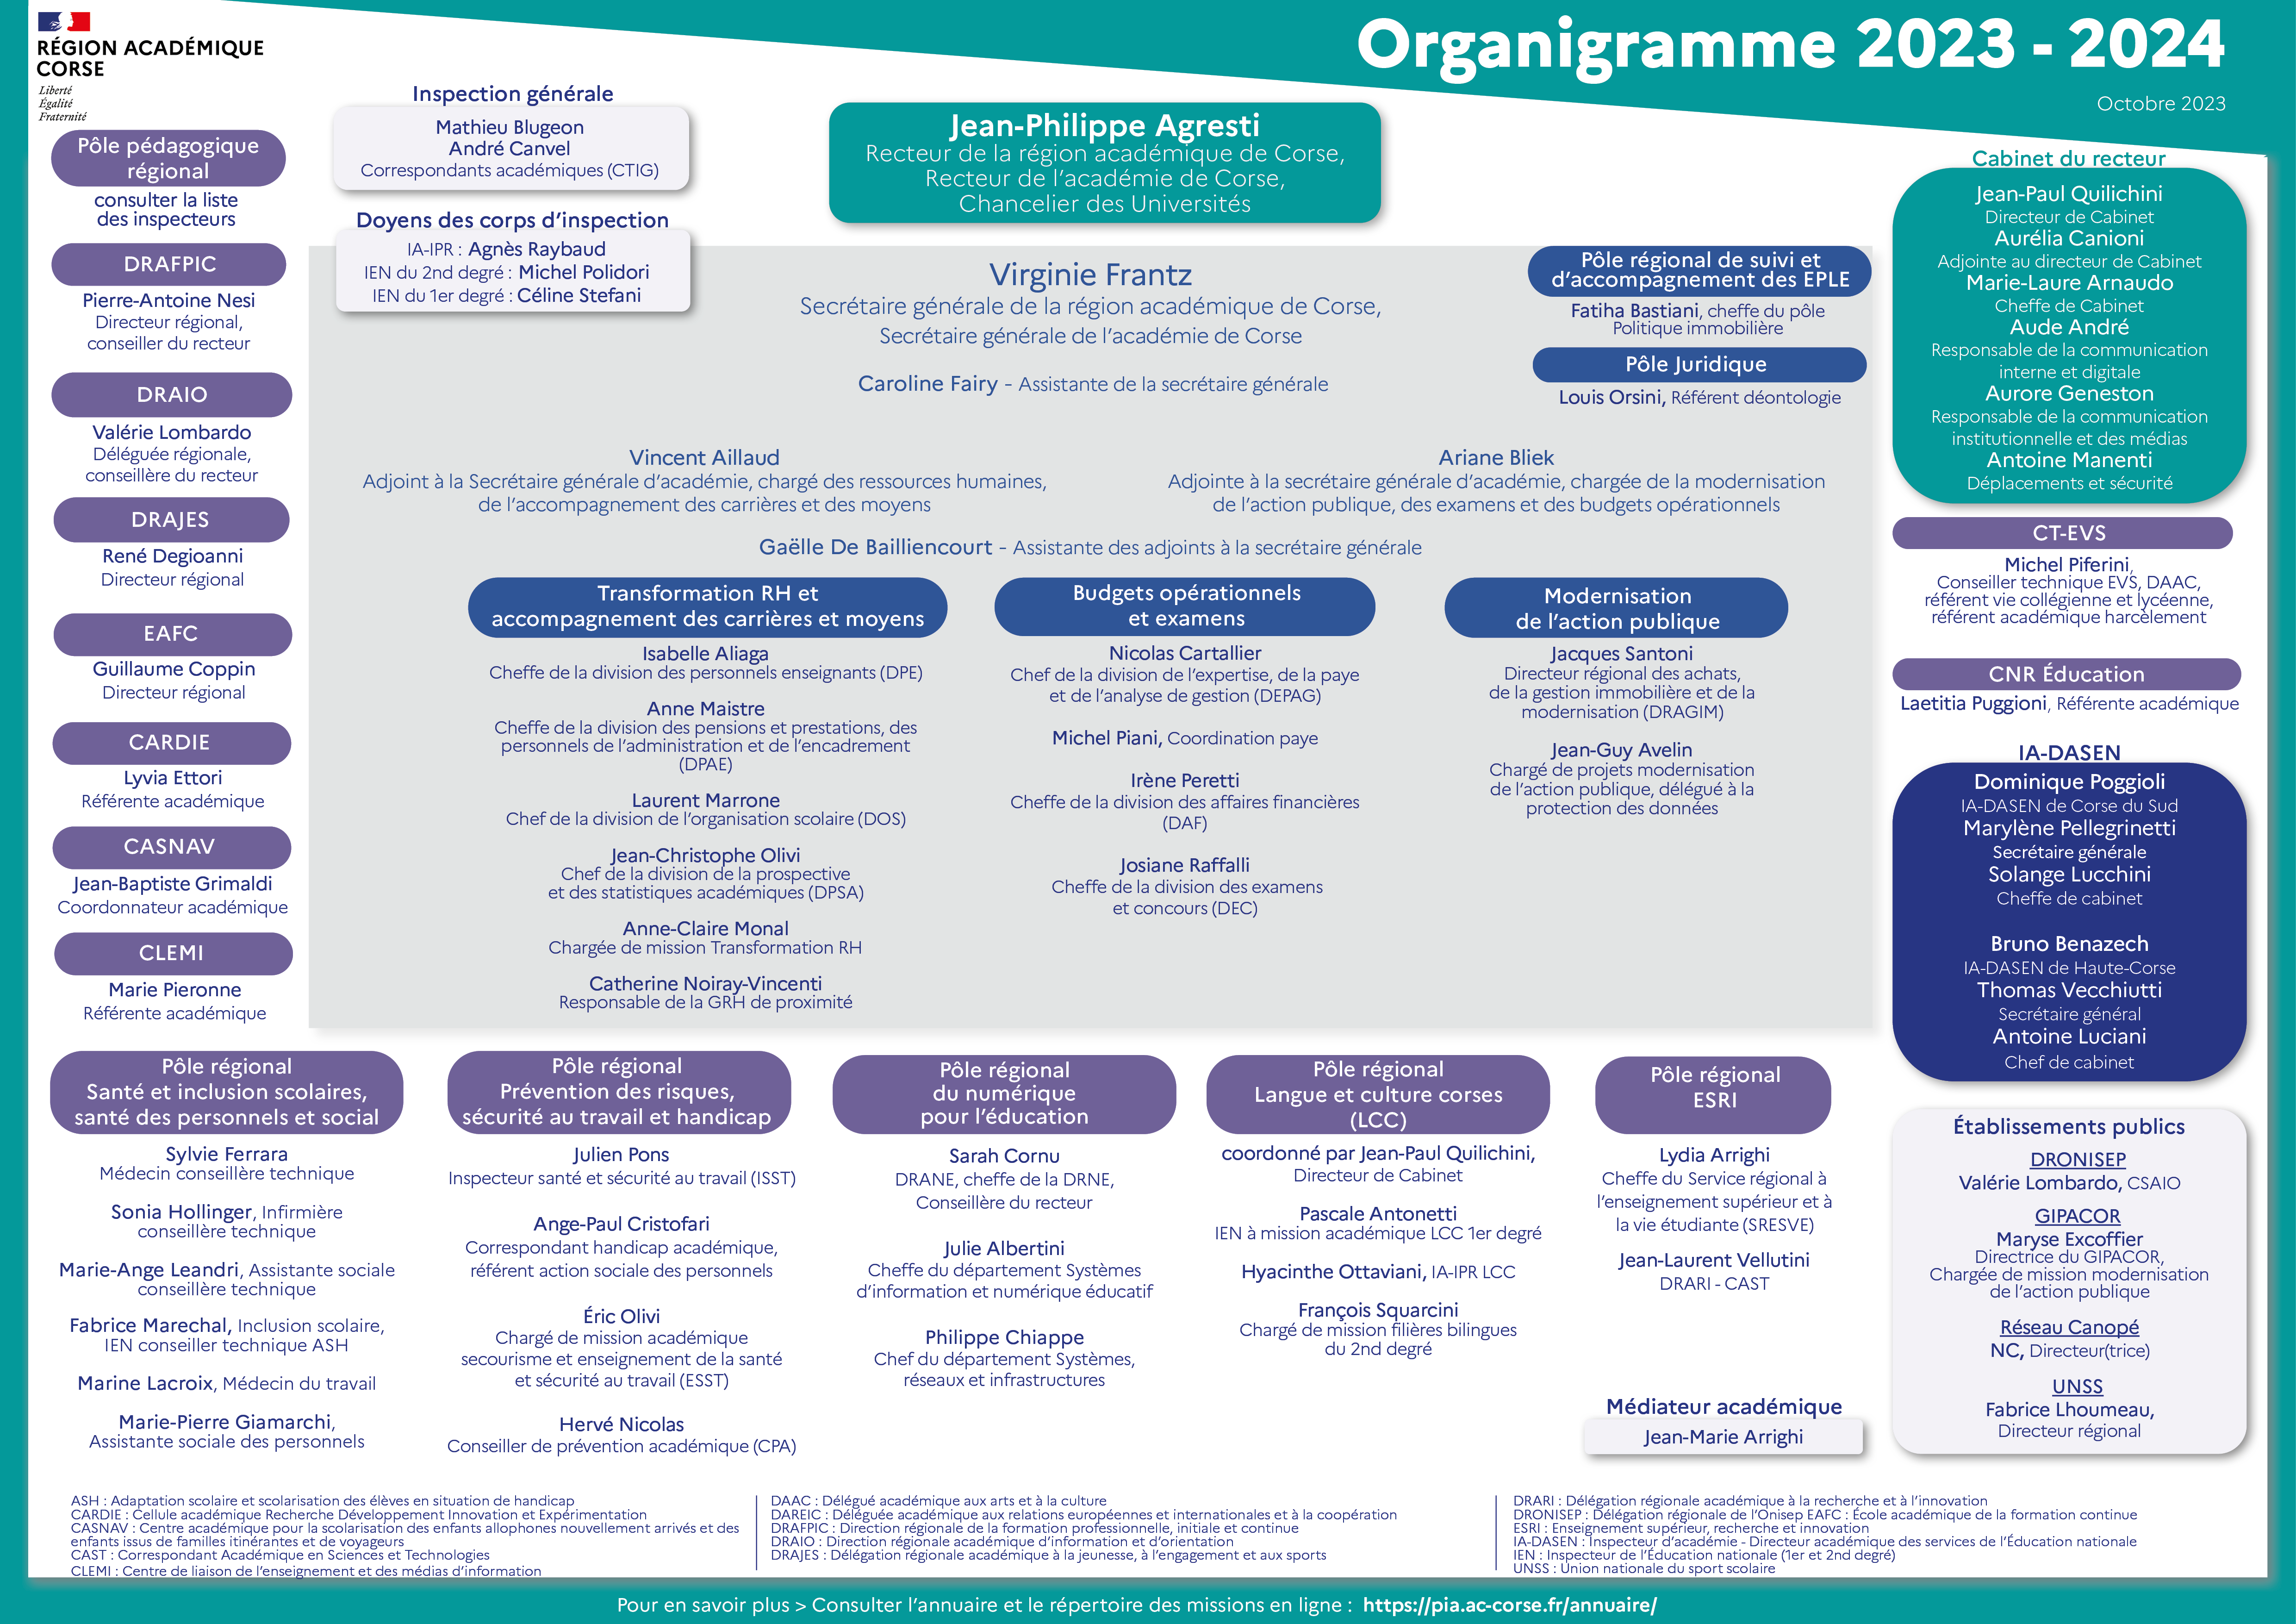 Organigramme des services de la région académique de Corse